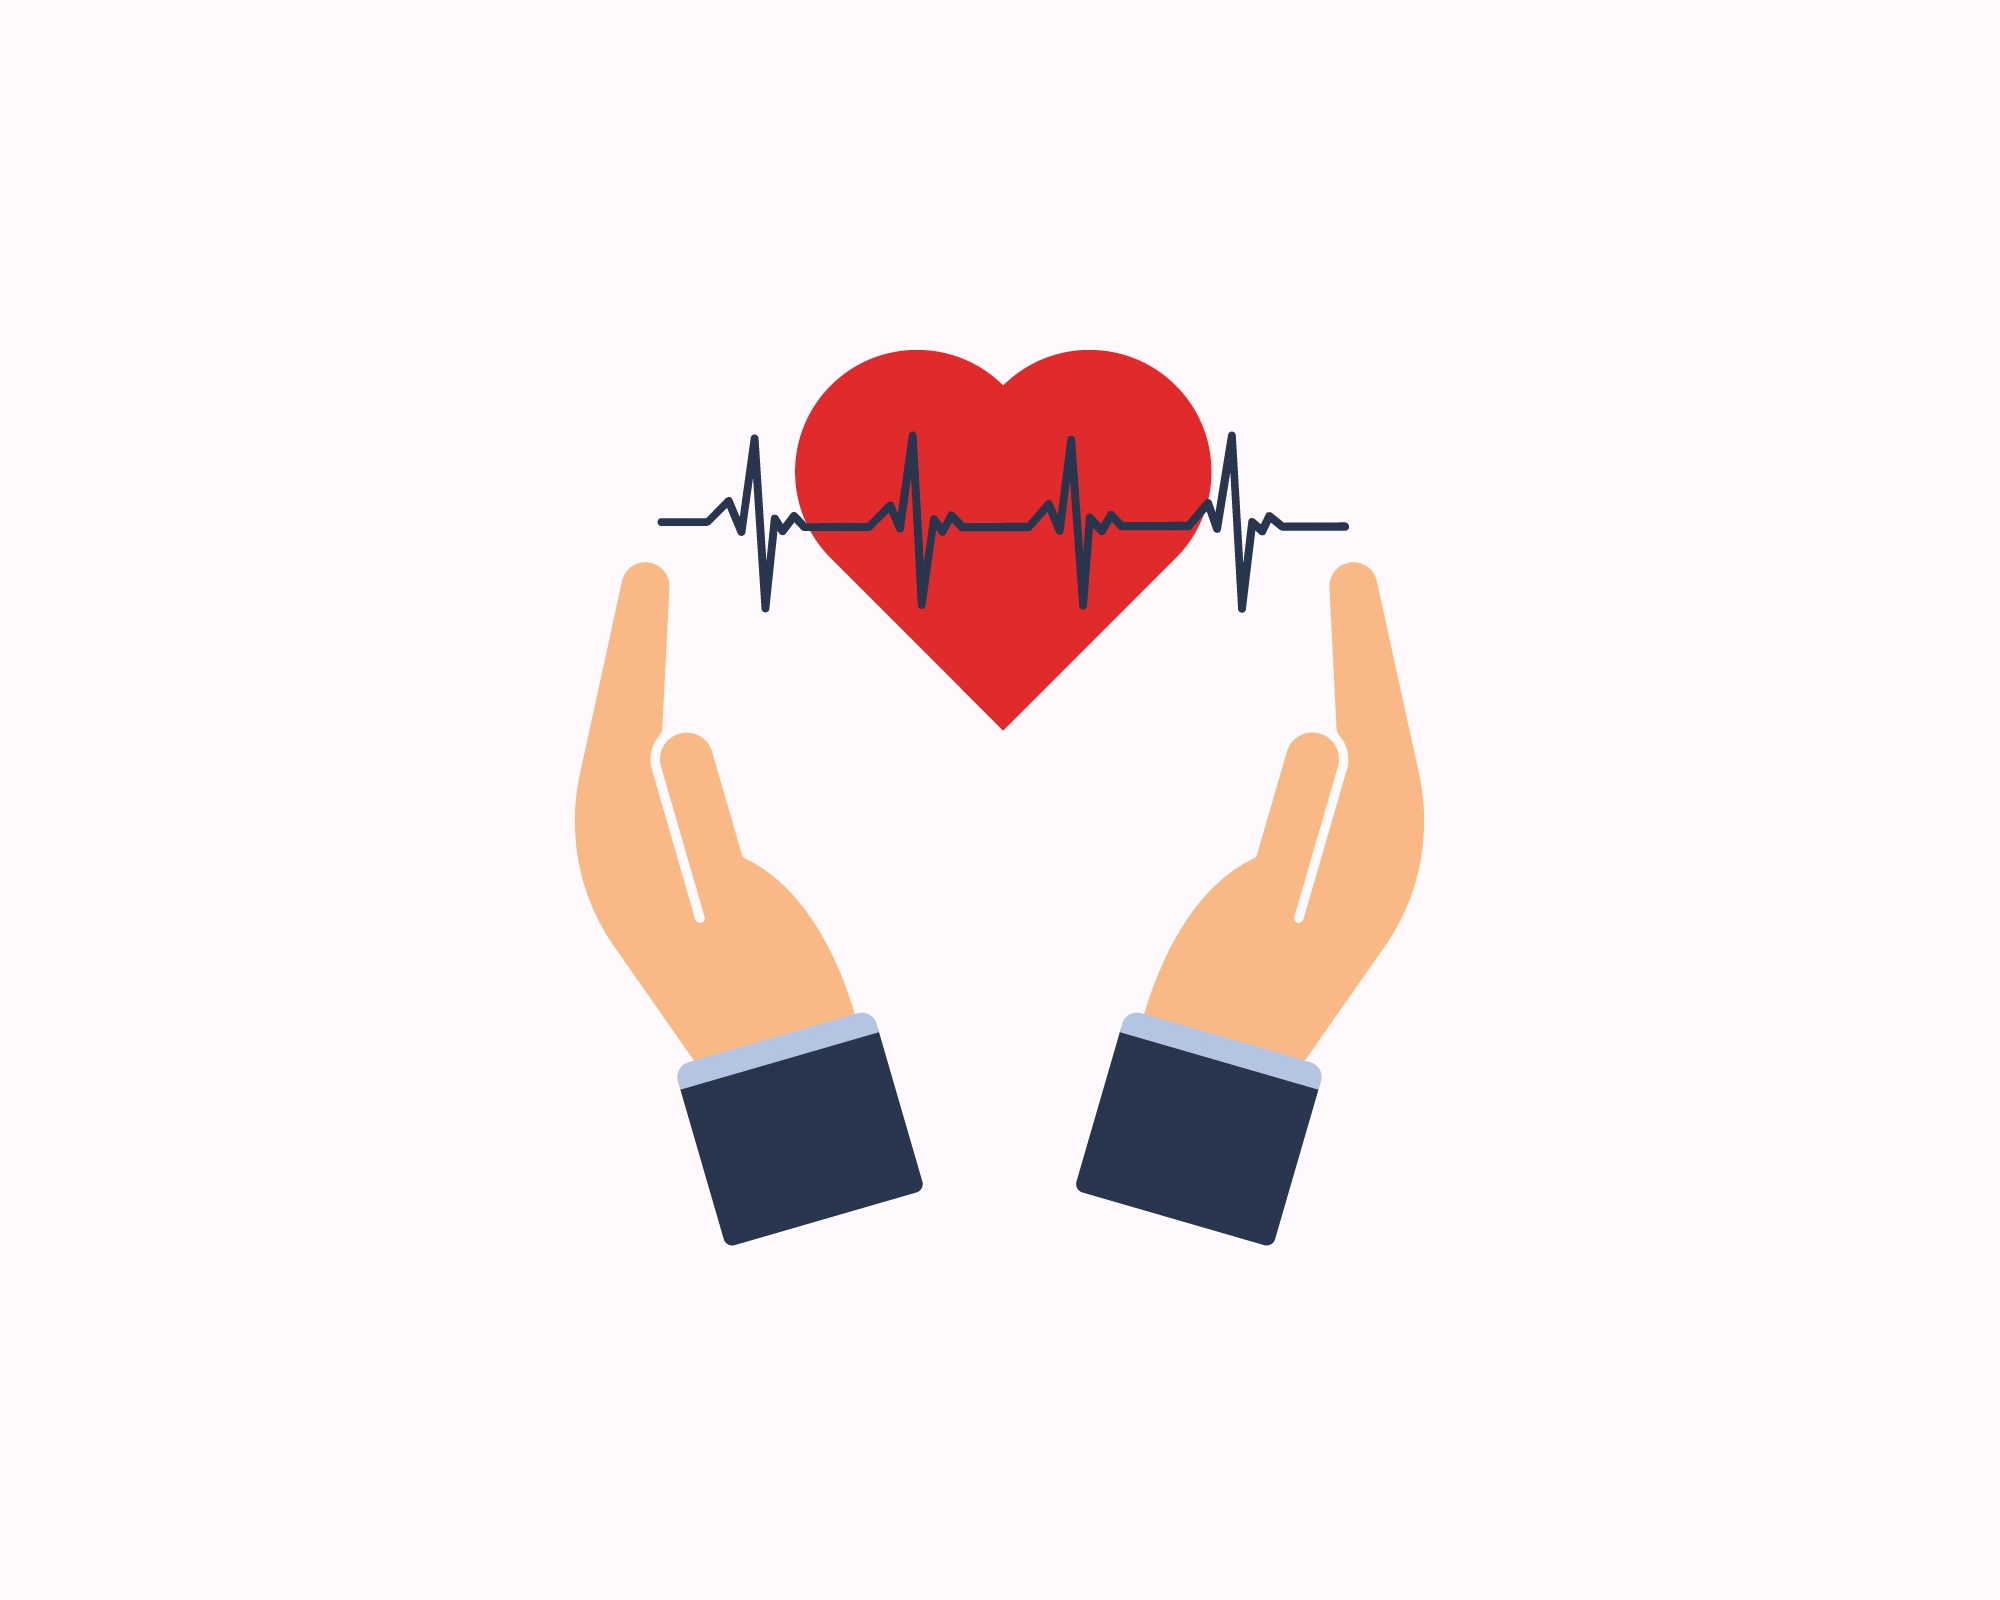 Сердечная аритмия увеличивает риск развития инсульта в пять раз